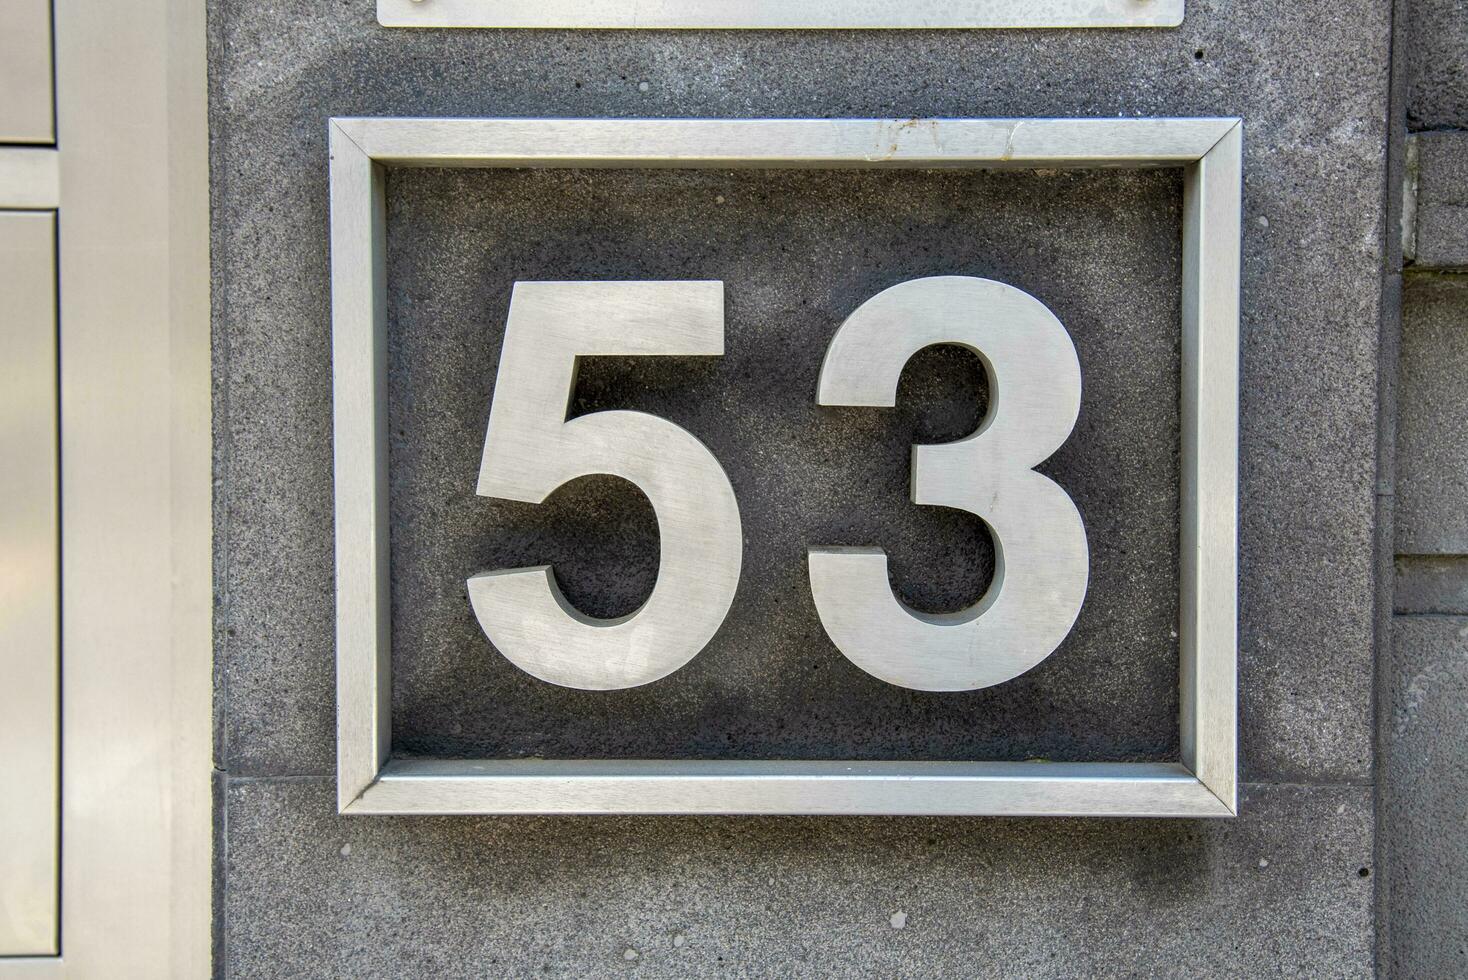 de bord met de aantal 53 is gemaakt van metaal. foto